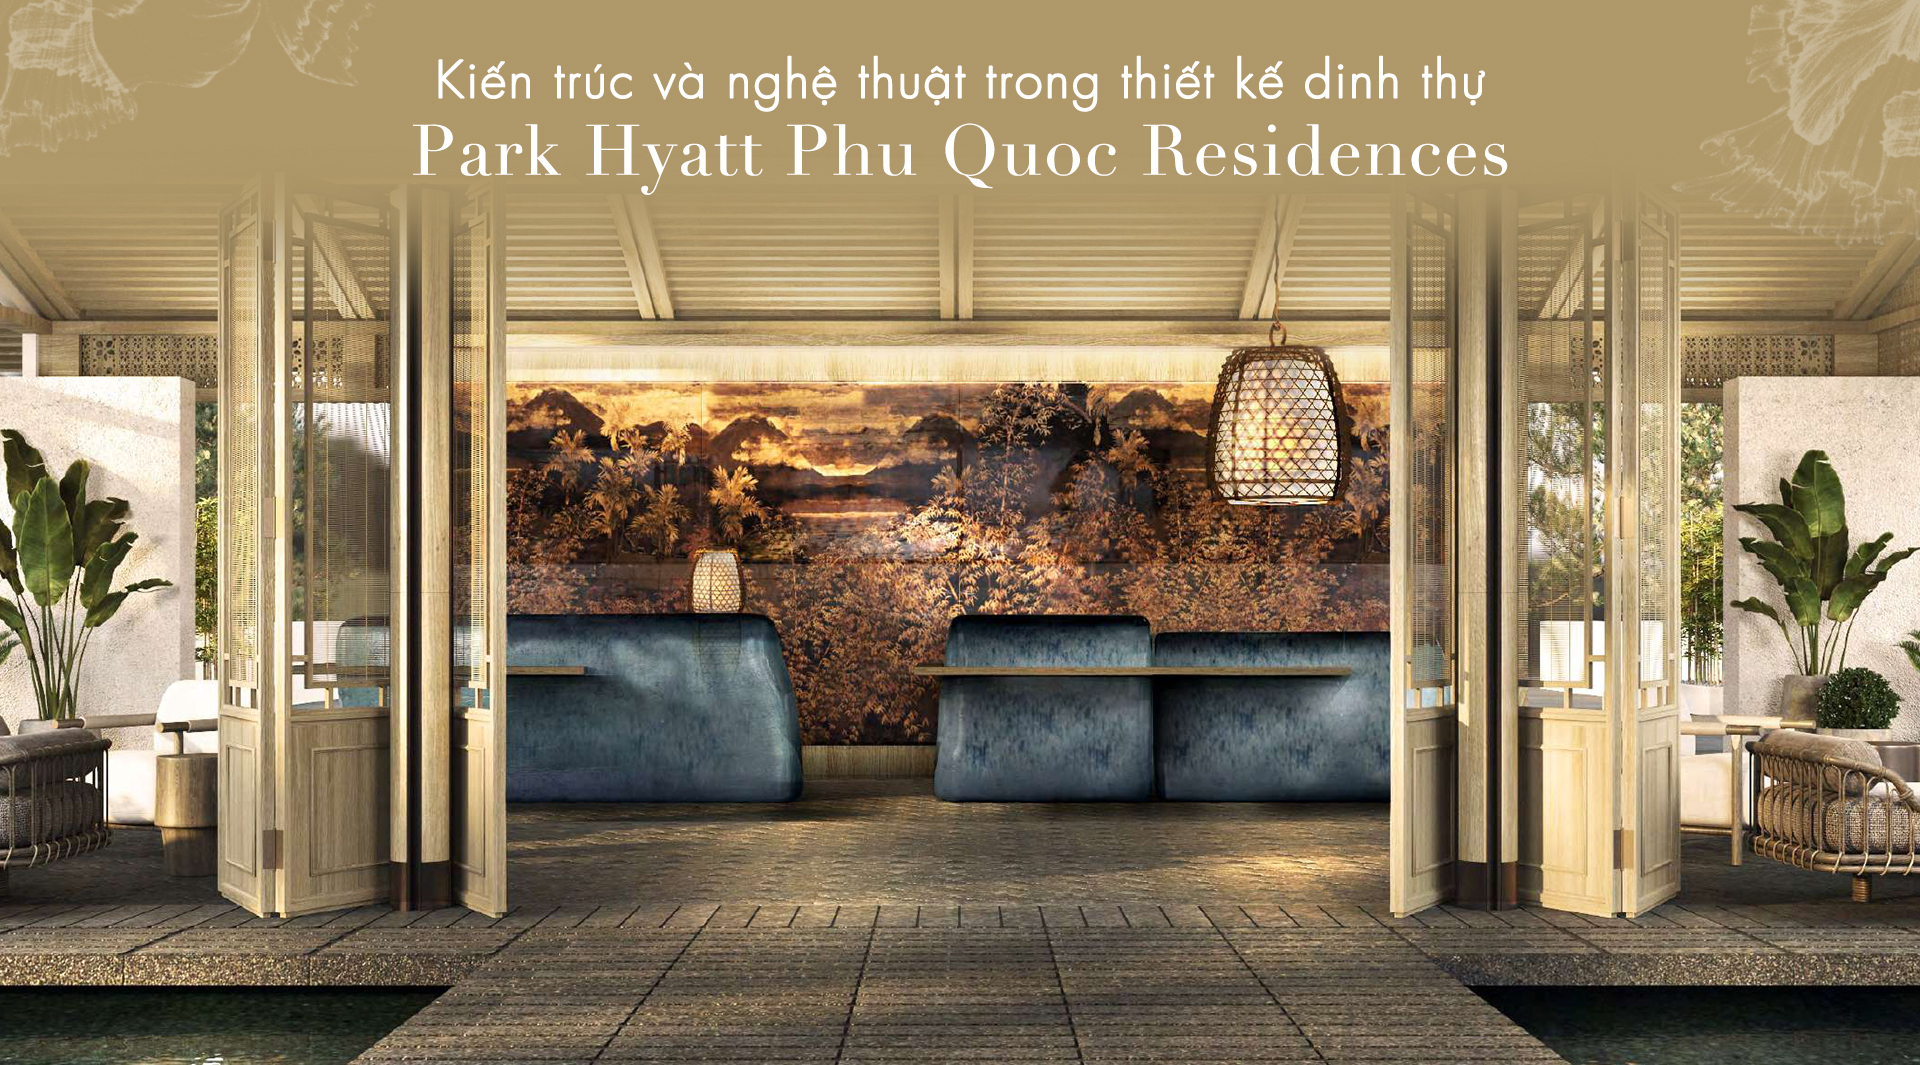 Kiến trúc và nghệ thuật trong thiết kế dinh thự Park Hyatt Phu Quoc Residences